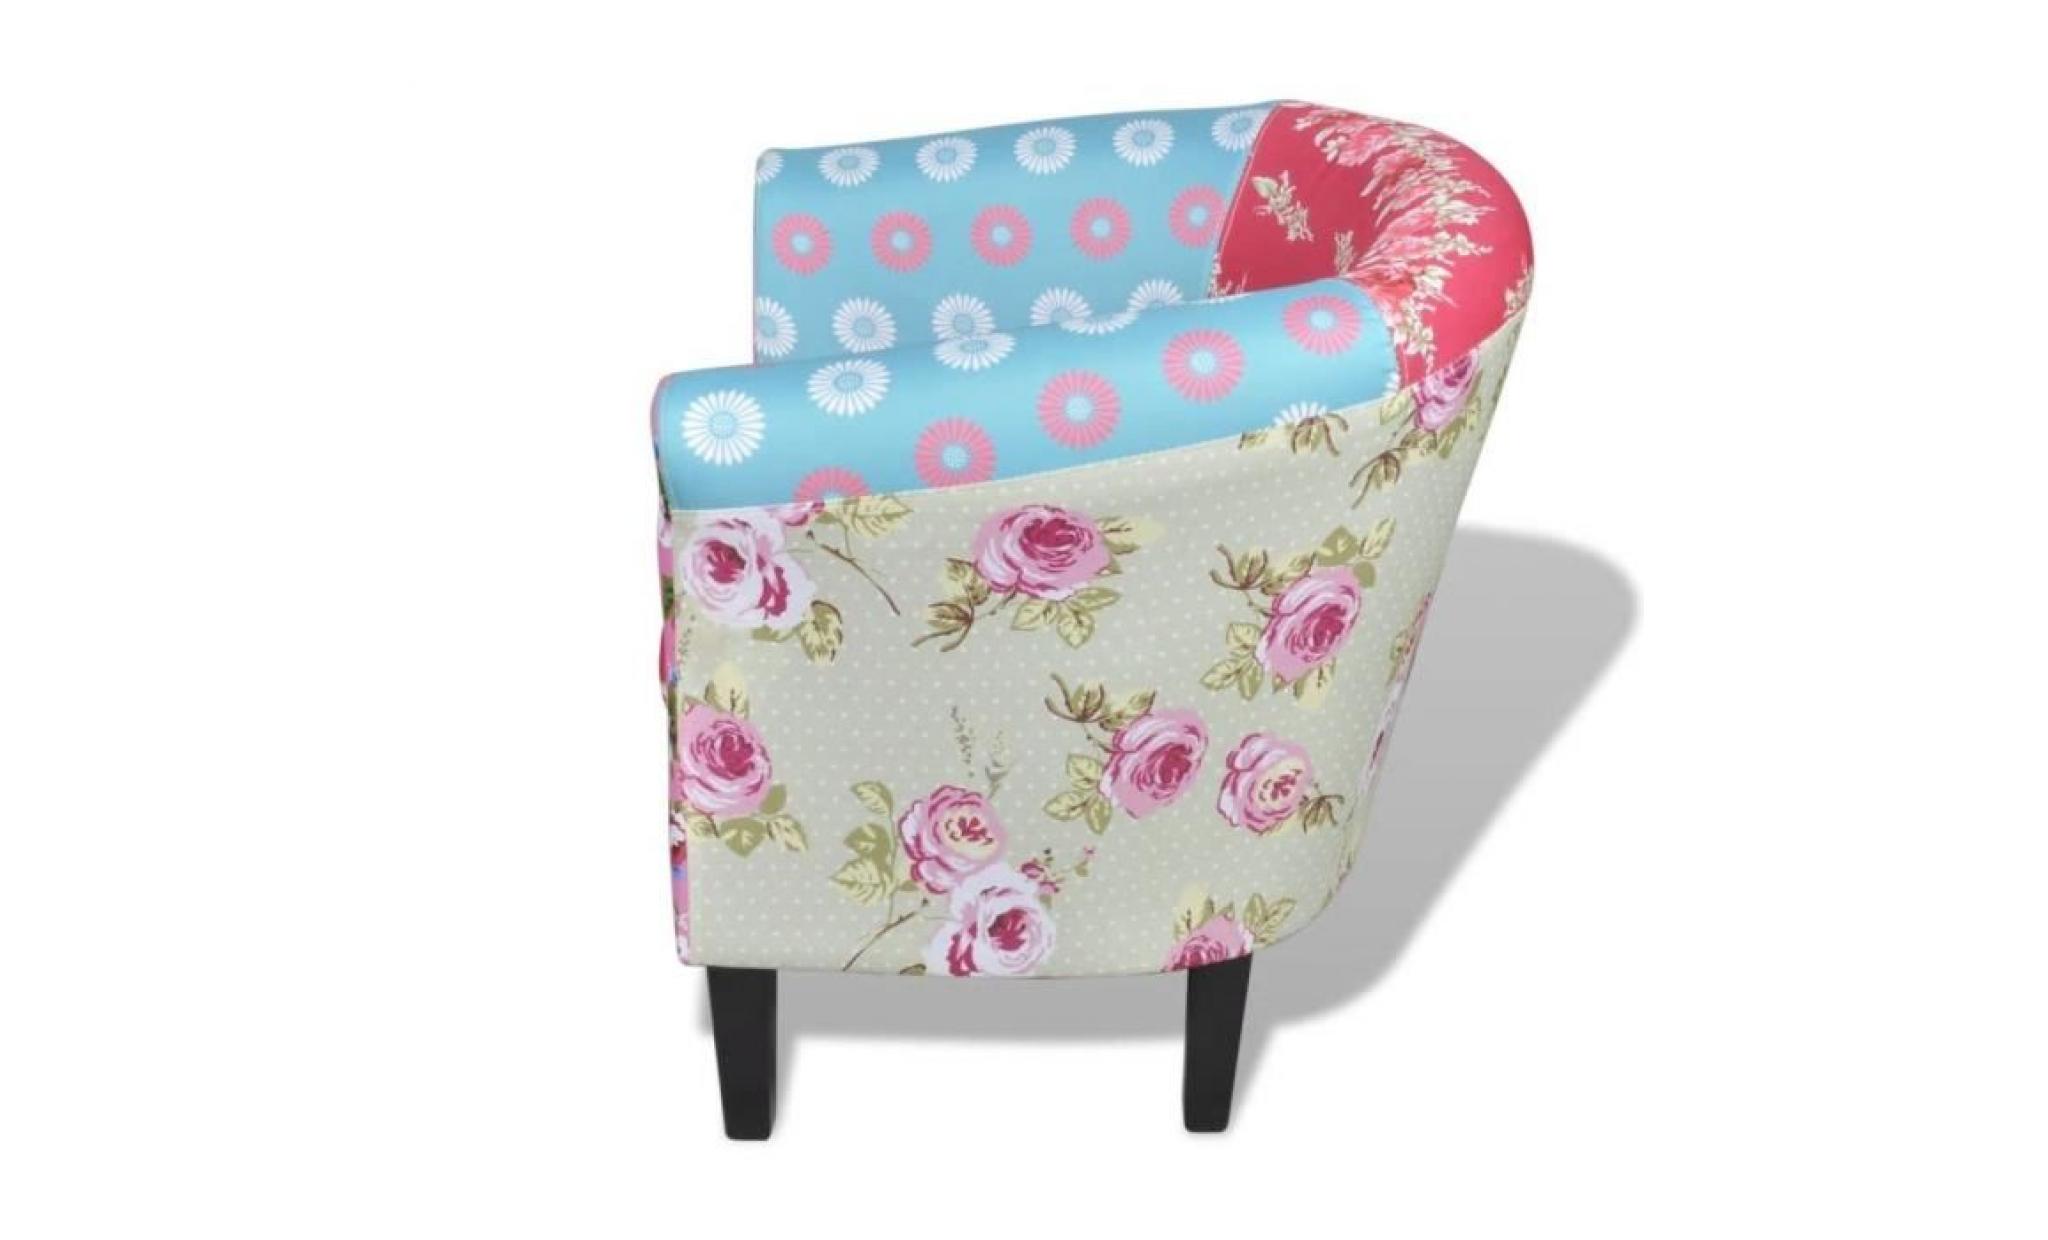 r128 ce fauteuil avec patchwork de haute qualite presente un design floral exclusif. presentant le style pastoralisme, c